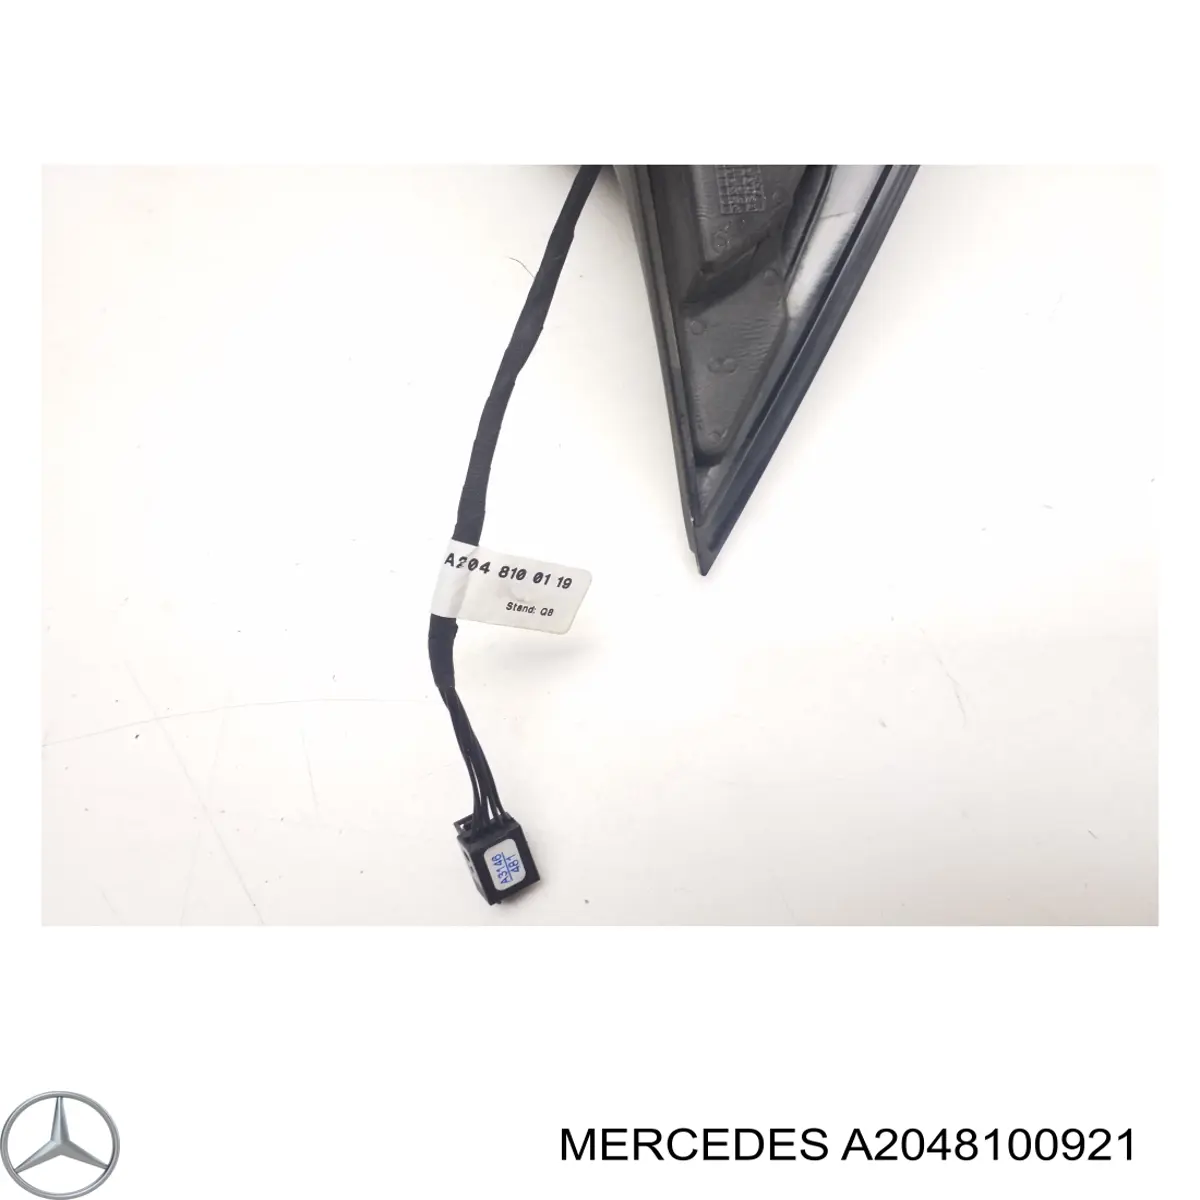 A2048100921 Mercedes cristal de espejo retrovisor exterior izquierdo